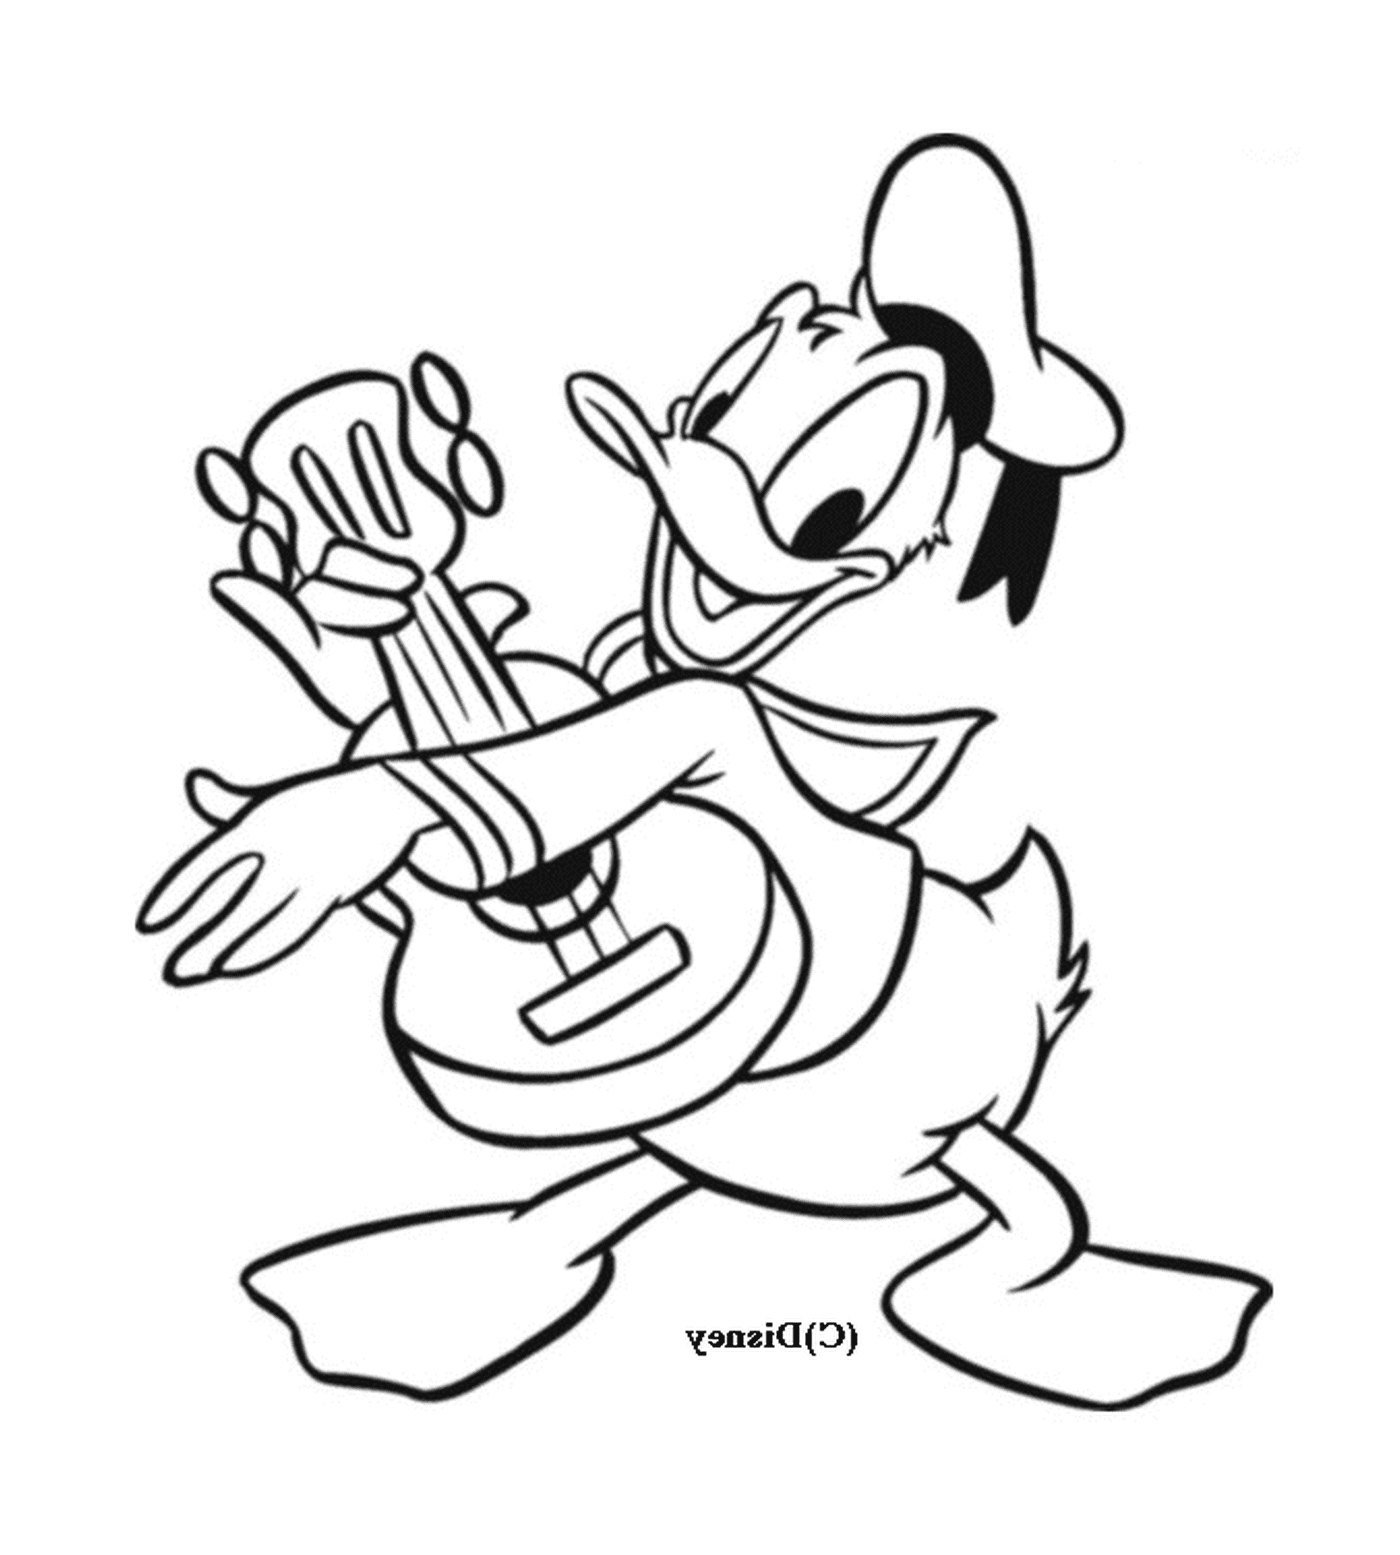  Donald zeichnet sich durch Musik mit seiner Gitarre aus 